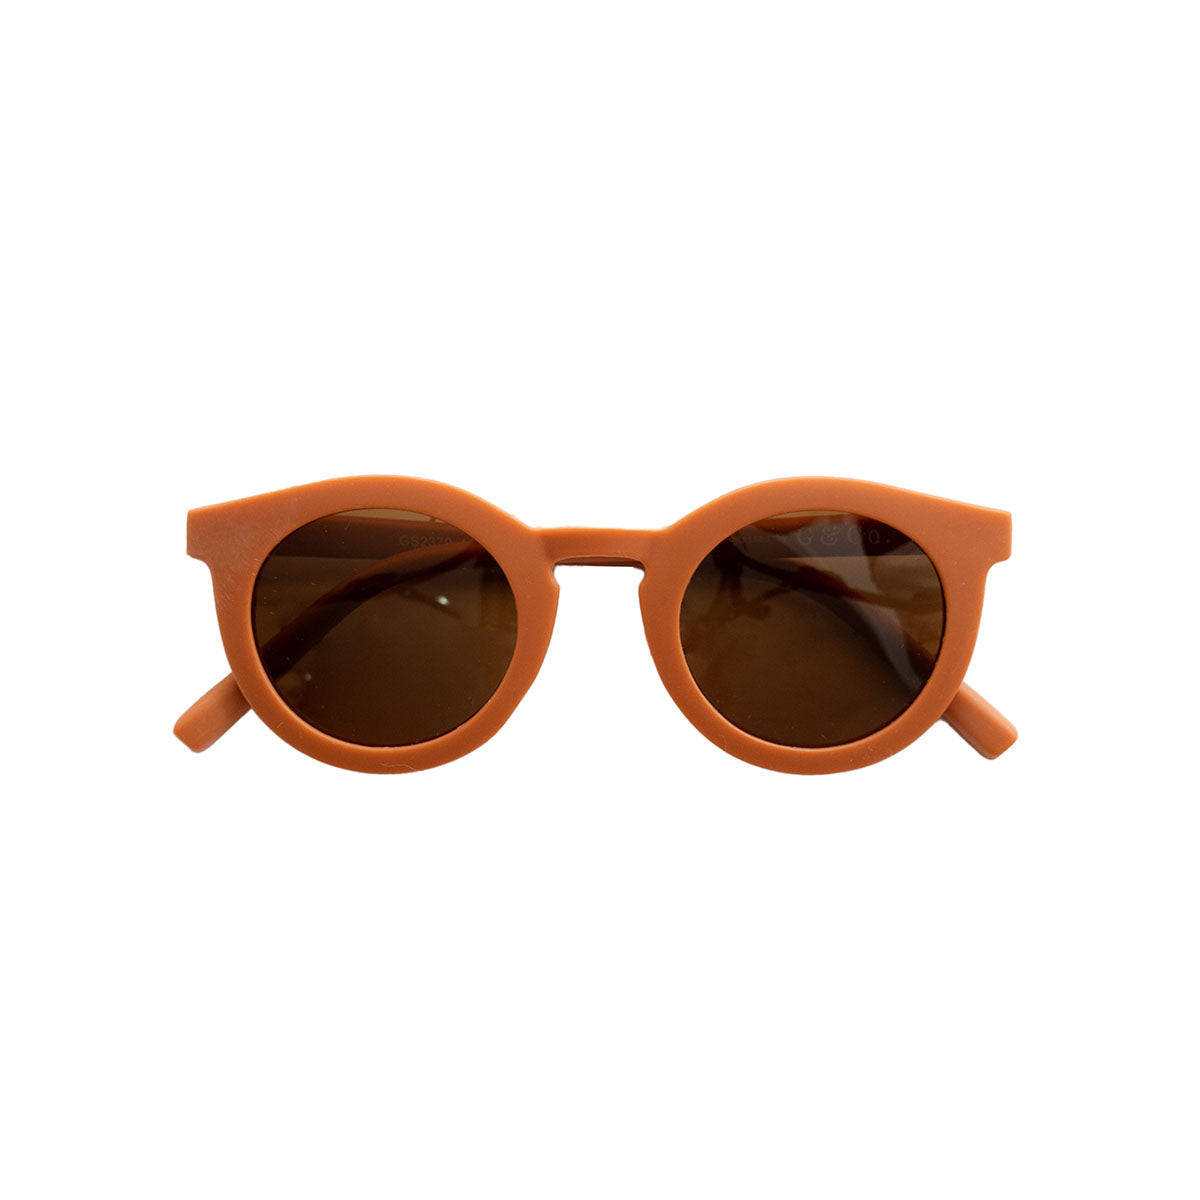 De Grech & co. zonnebril classic kind in de kleur rust is de perfecte keuze voor trendy en modebewuste kinderen en hun ouders. De zonnebril is namelijk ook beschikbaar voor volwassenen! VanZus